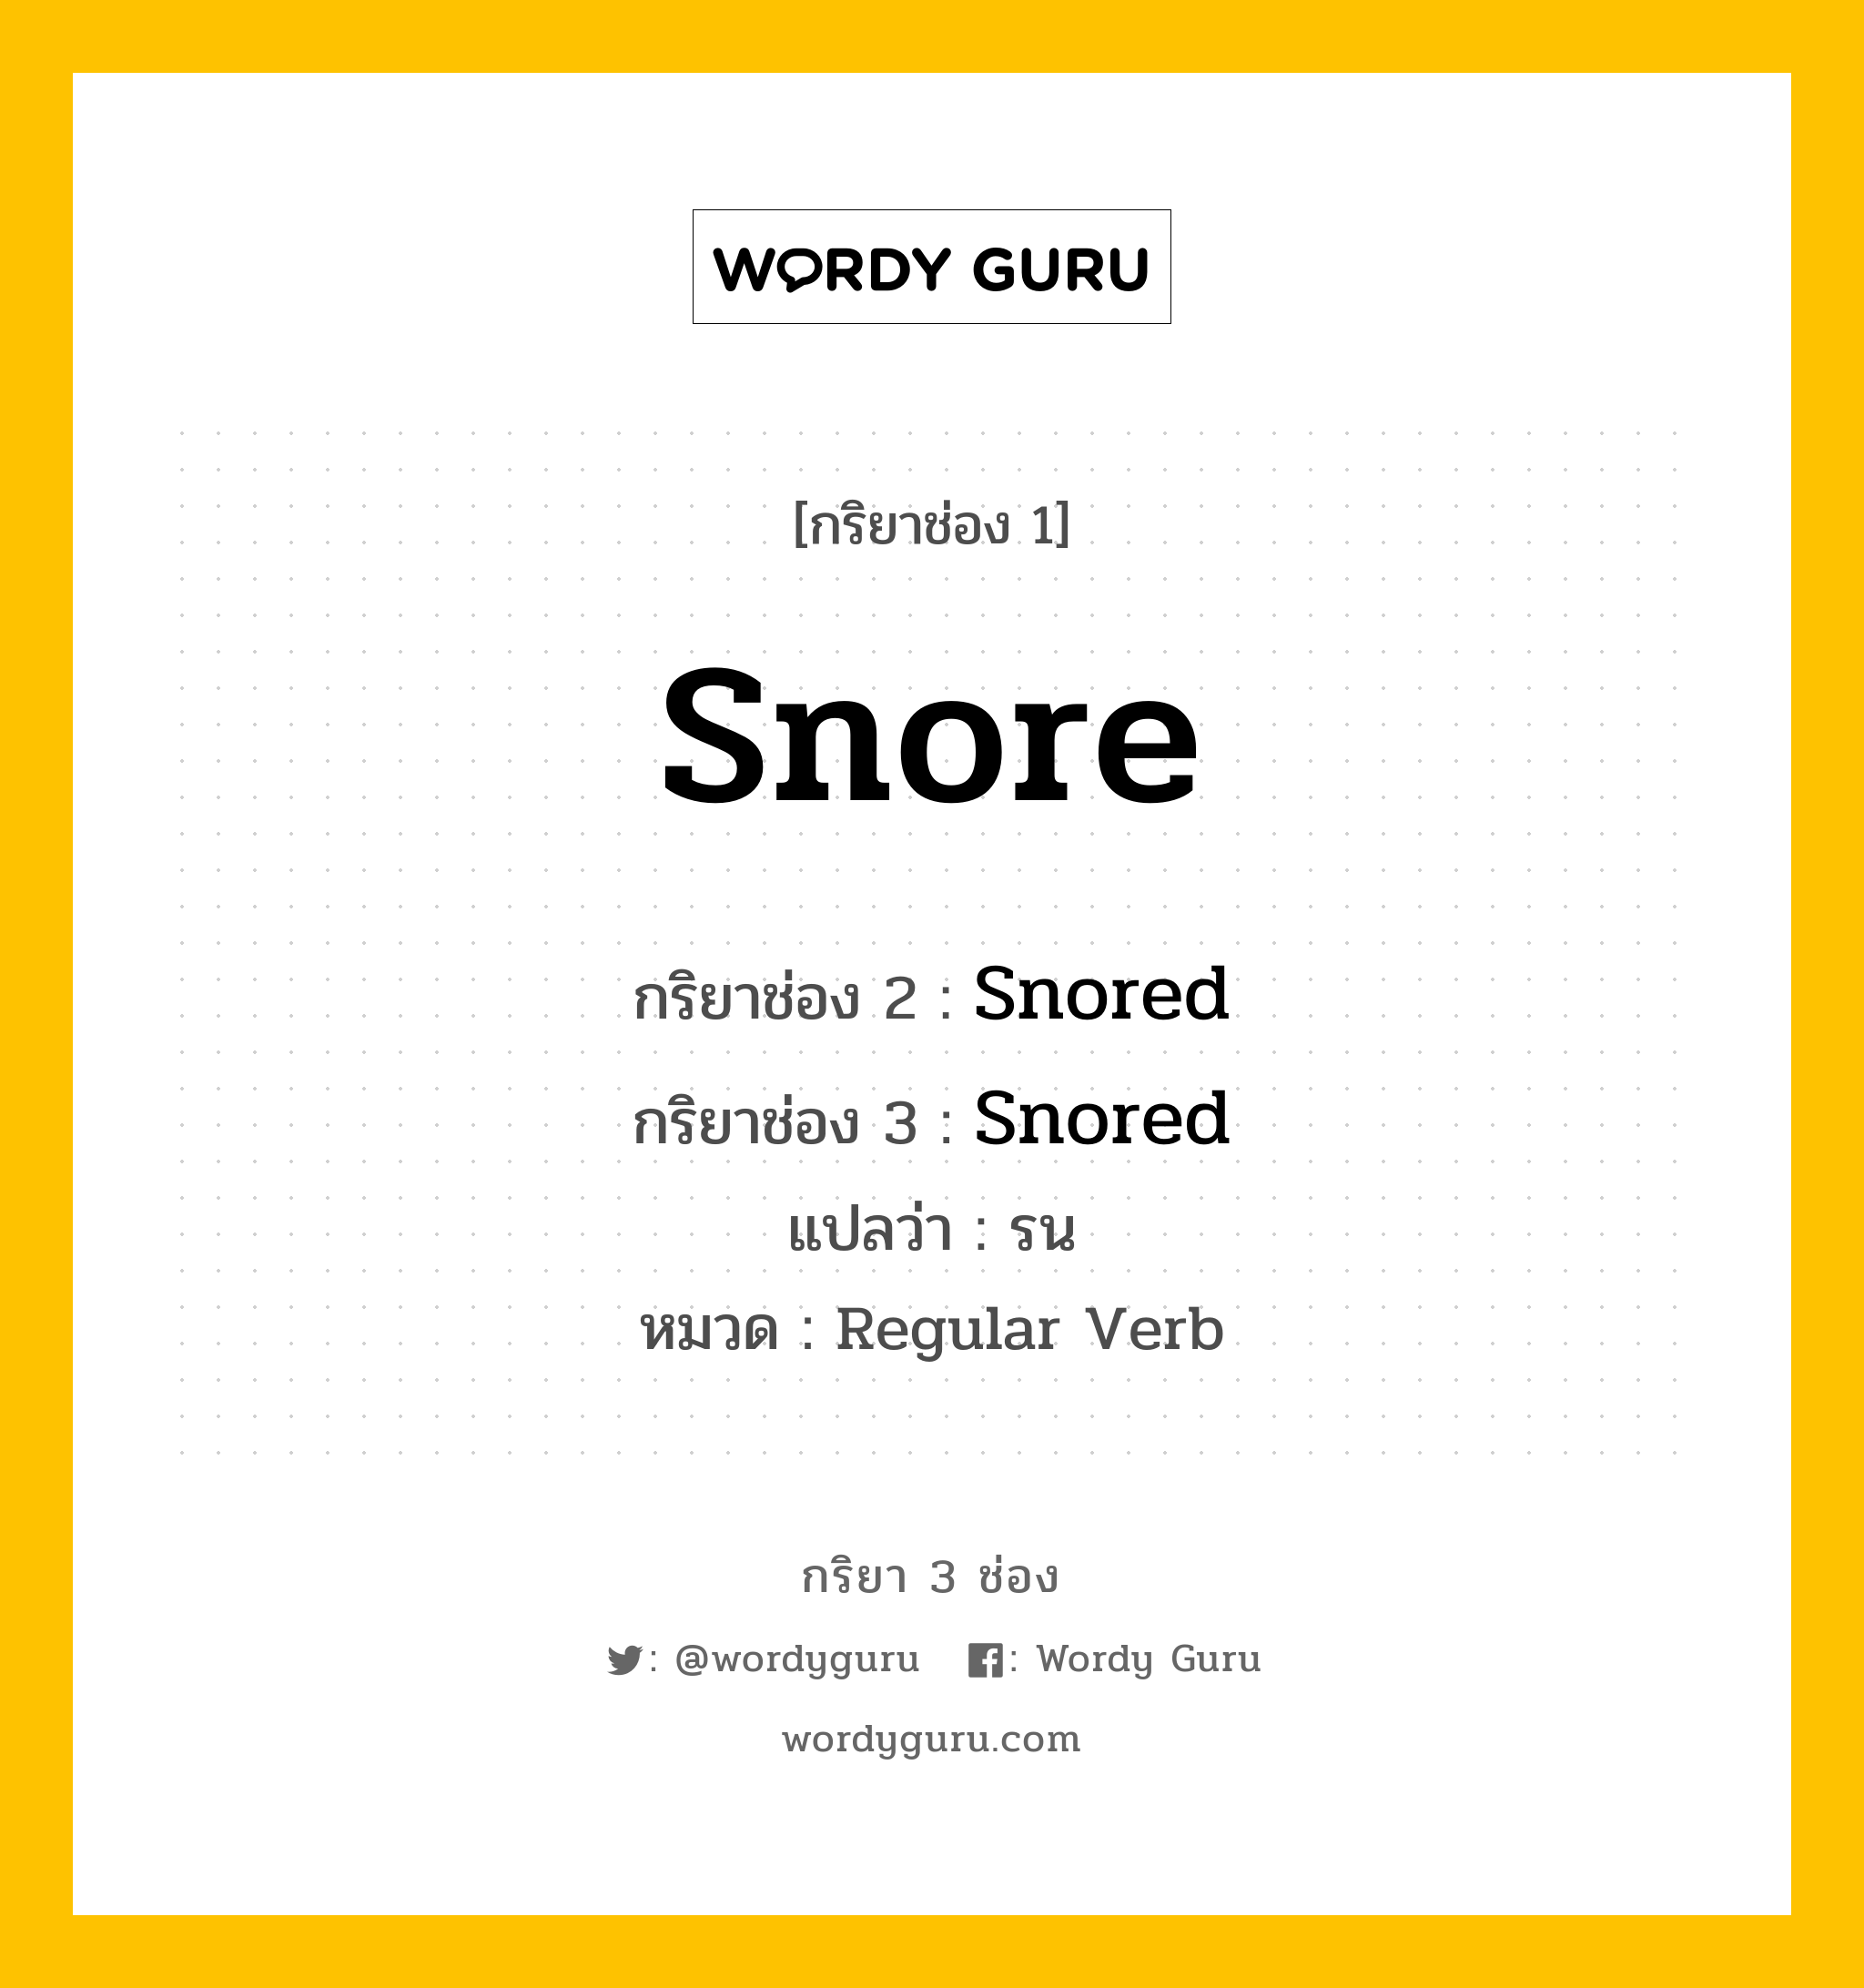 กริยา 3 ช่อง ของ Snore คืออะไร? มาดูคำอ่าน คำแปลกันเลย, กริยาช่อง 1 Snore กริยาช่อง 2 Snored กริยาช่อง 3 Snored แปลว่า รน หมวด Regular Verb หมวด Regular Verb